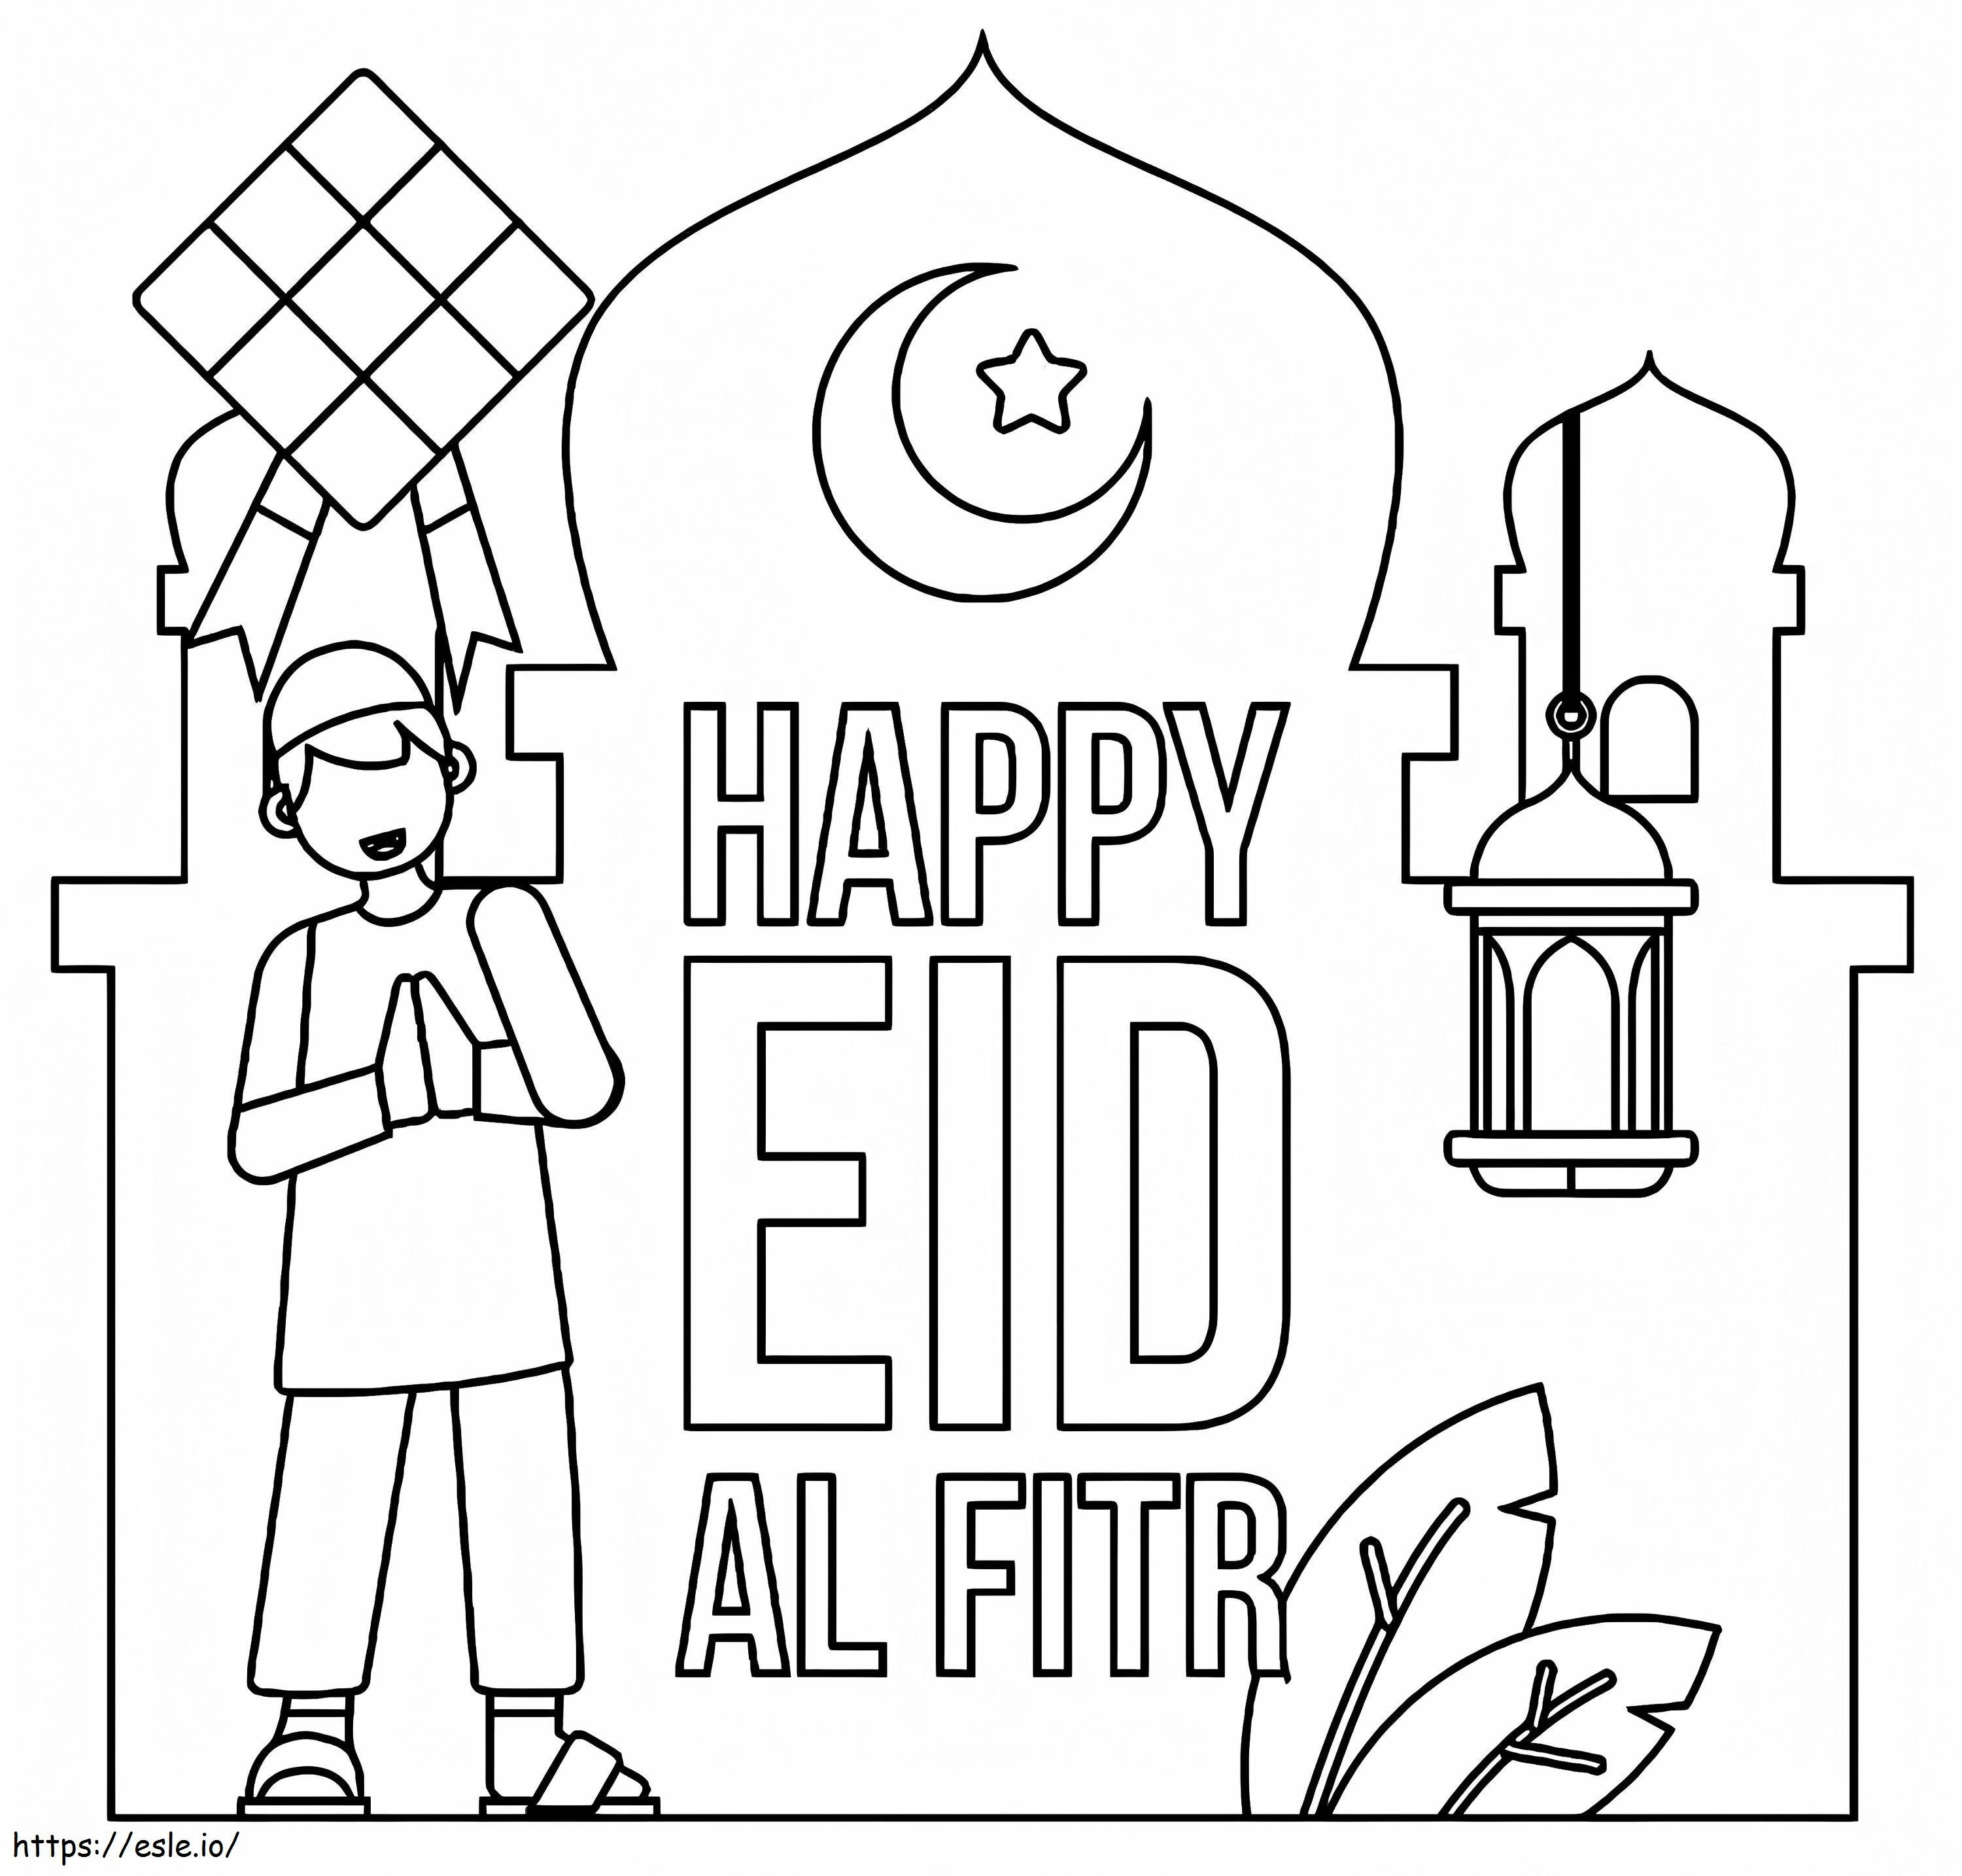 Feliz Eid Al Fitr 1 para colorear